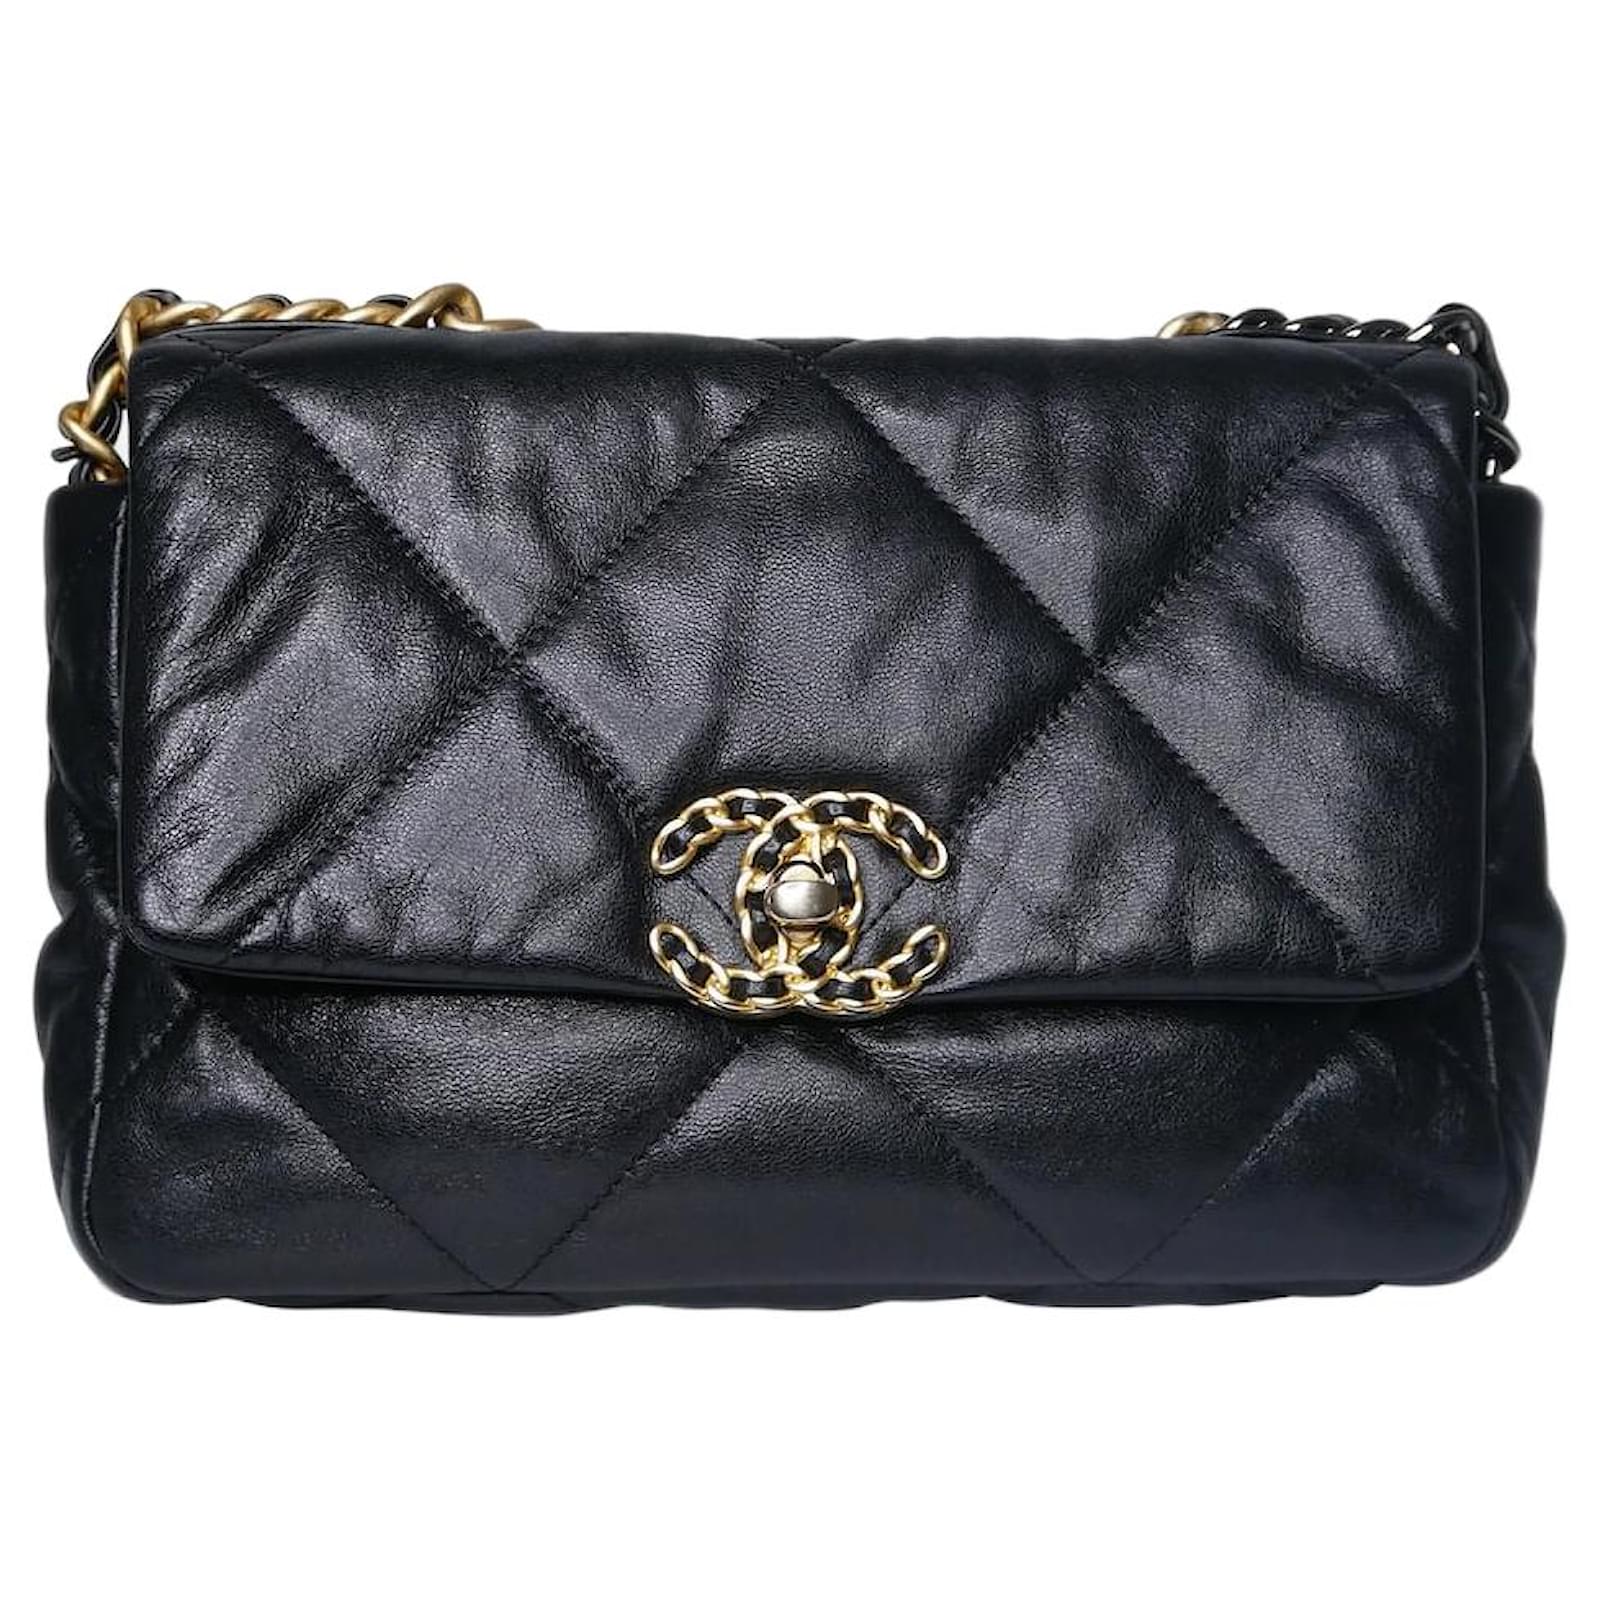 Chanel Black 2020 Quilted 19 shoulder bag with gold hardware